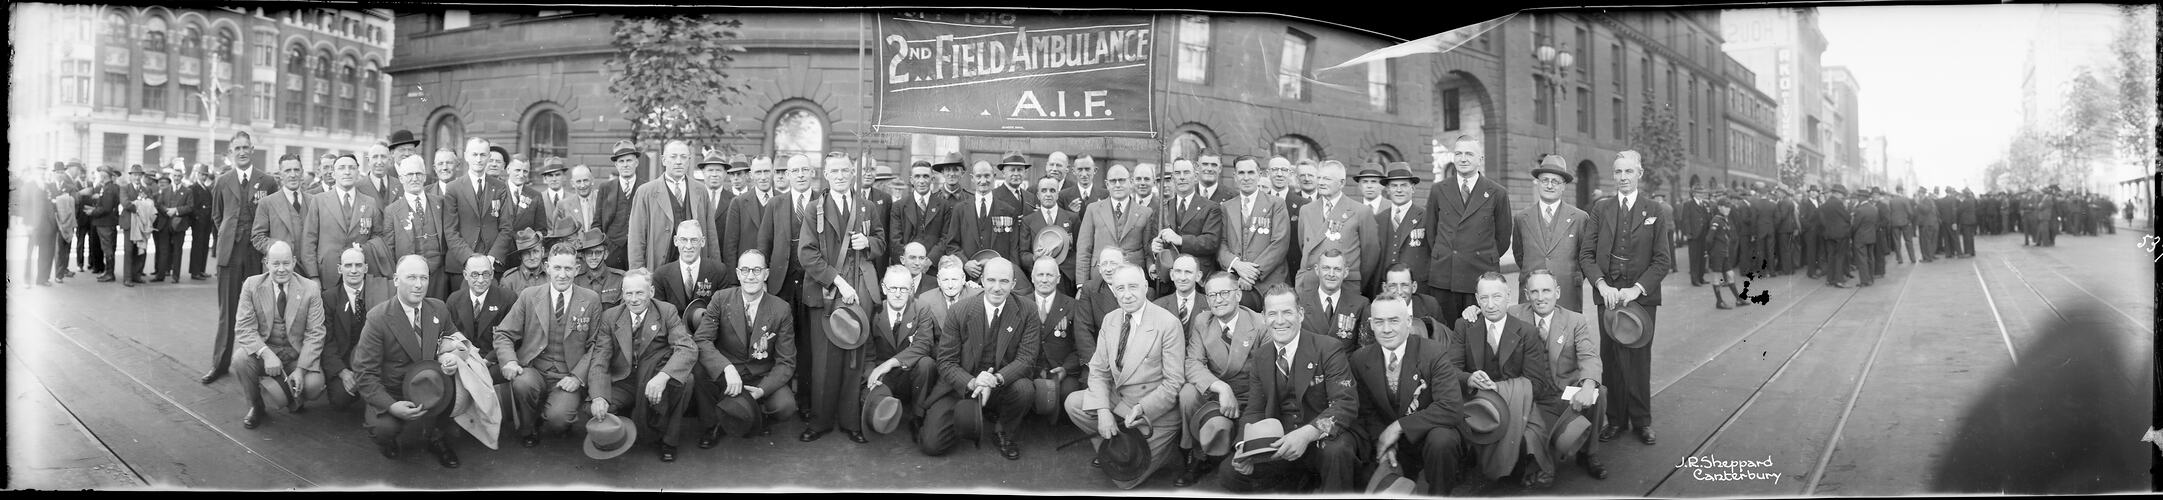 2nd Field Ambulance, Anzac Day, Melbourne, post 1918